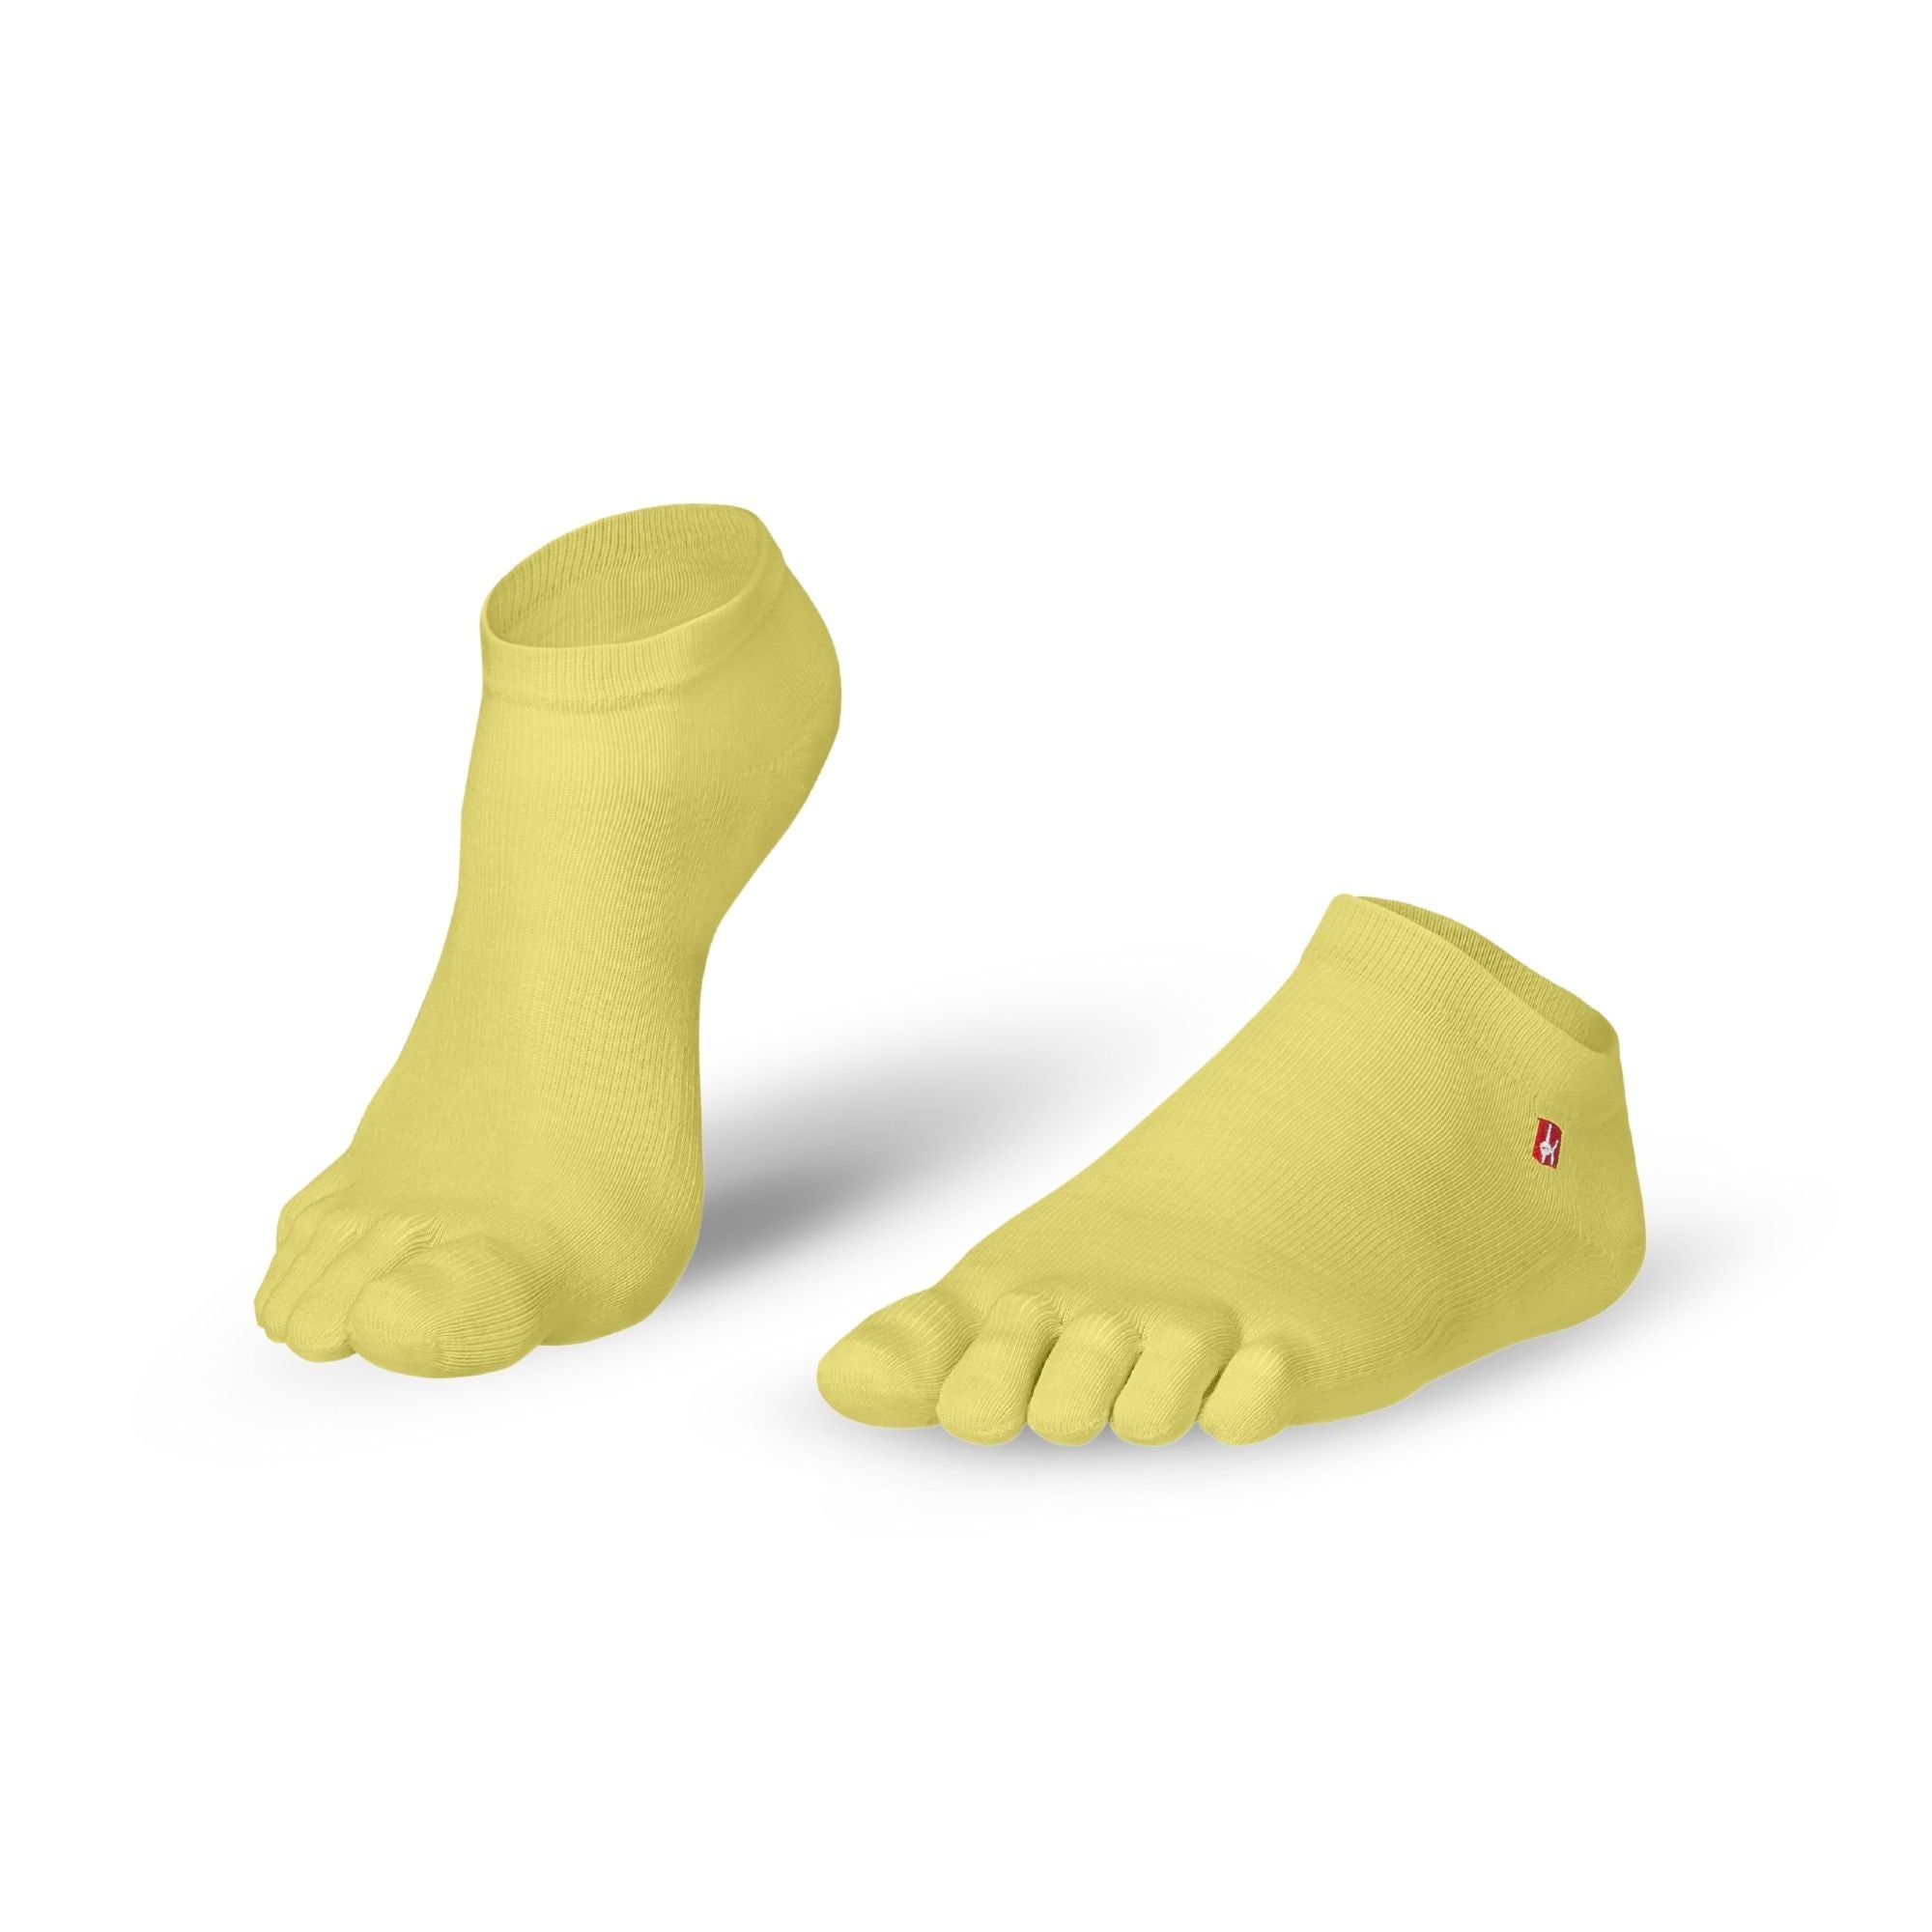 Prstne nogavice Coolmax Sneaker by Knitido Track & Trail ultralite fresh v rumeni barvi